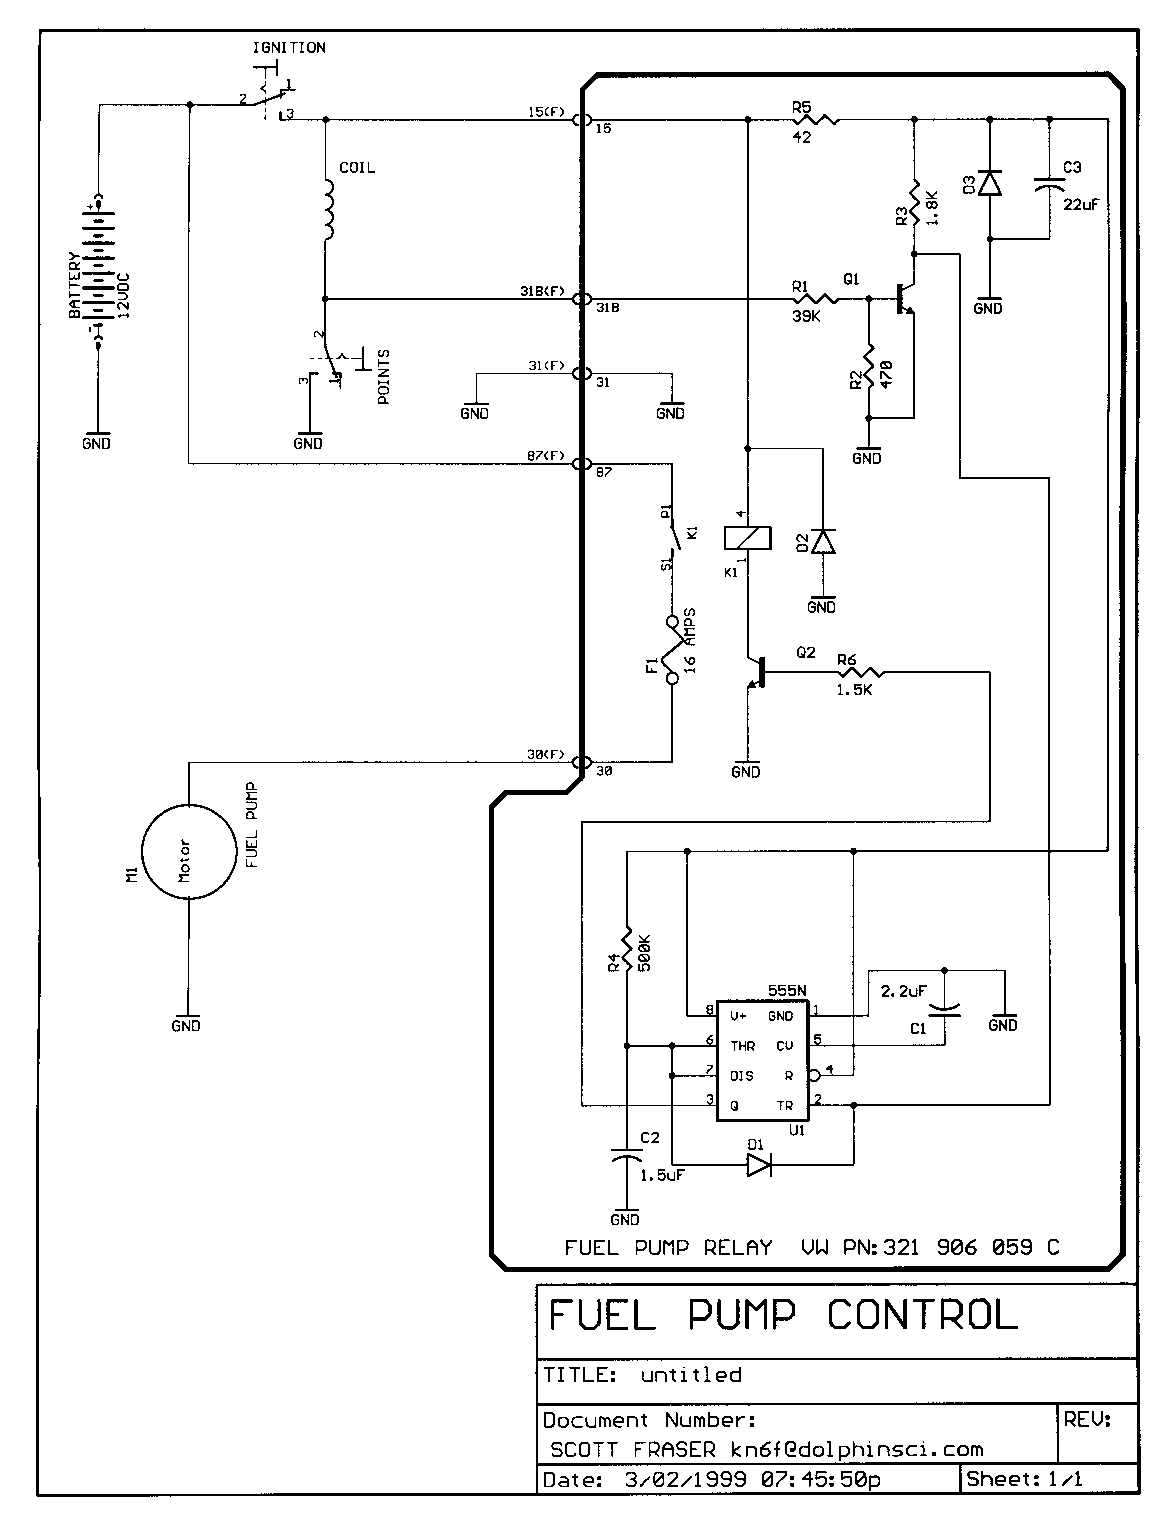 TheSamba.com :: Bay Window Bus - View topic - Fuel pump wiring Fuel Pump Relay Wiring Diagram TheSamba.com